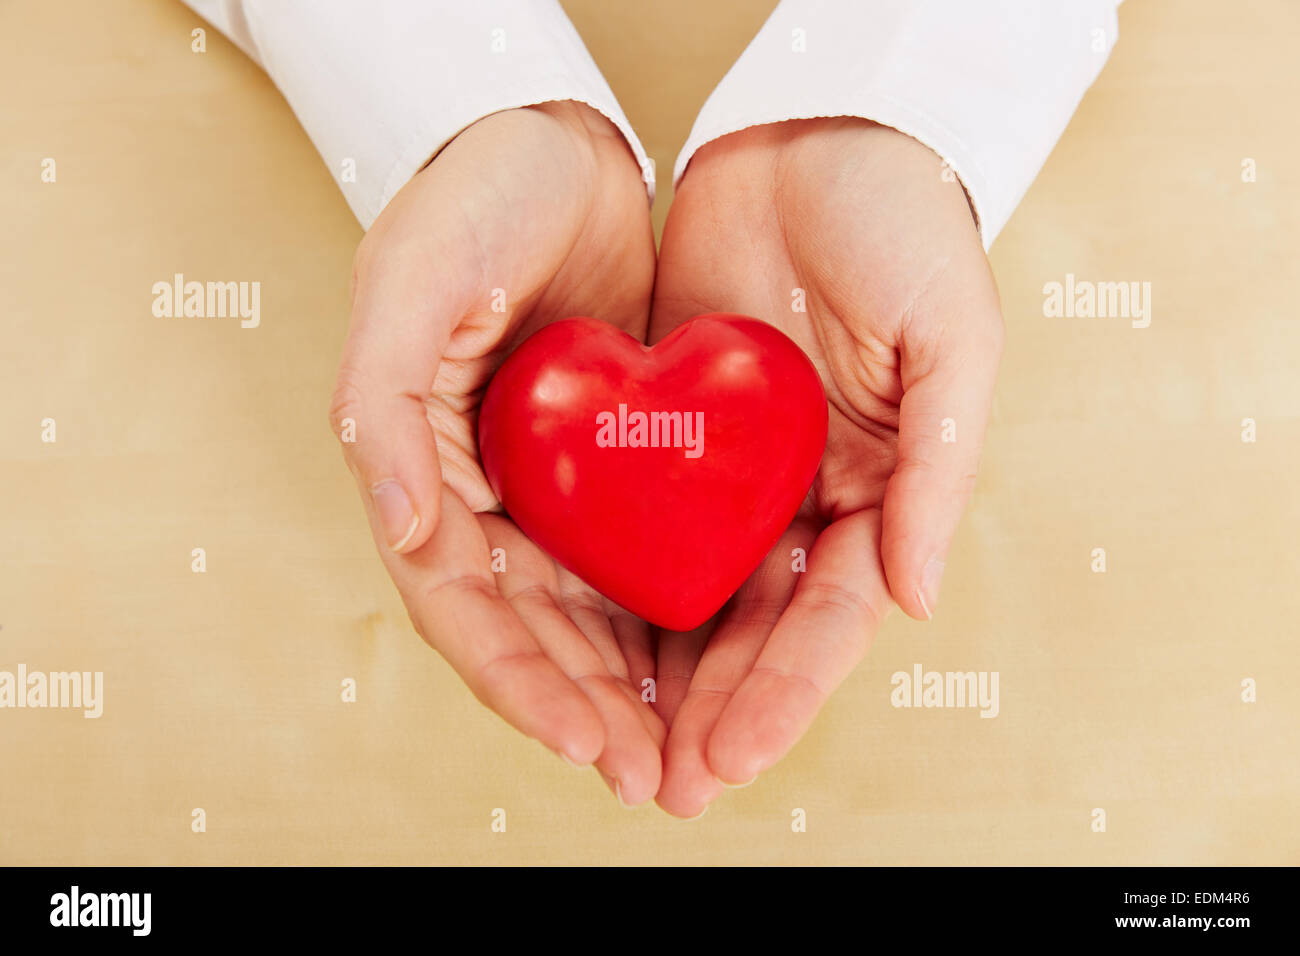 Frau rotes Herz in ihren Händen hält, als Symbol für Liebe und Fürsorge Stockfoto